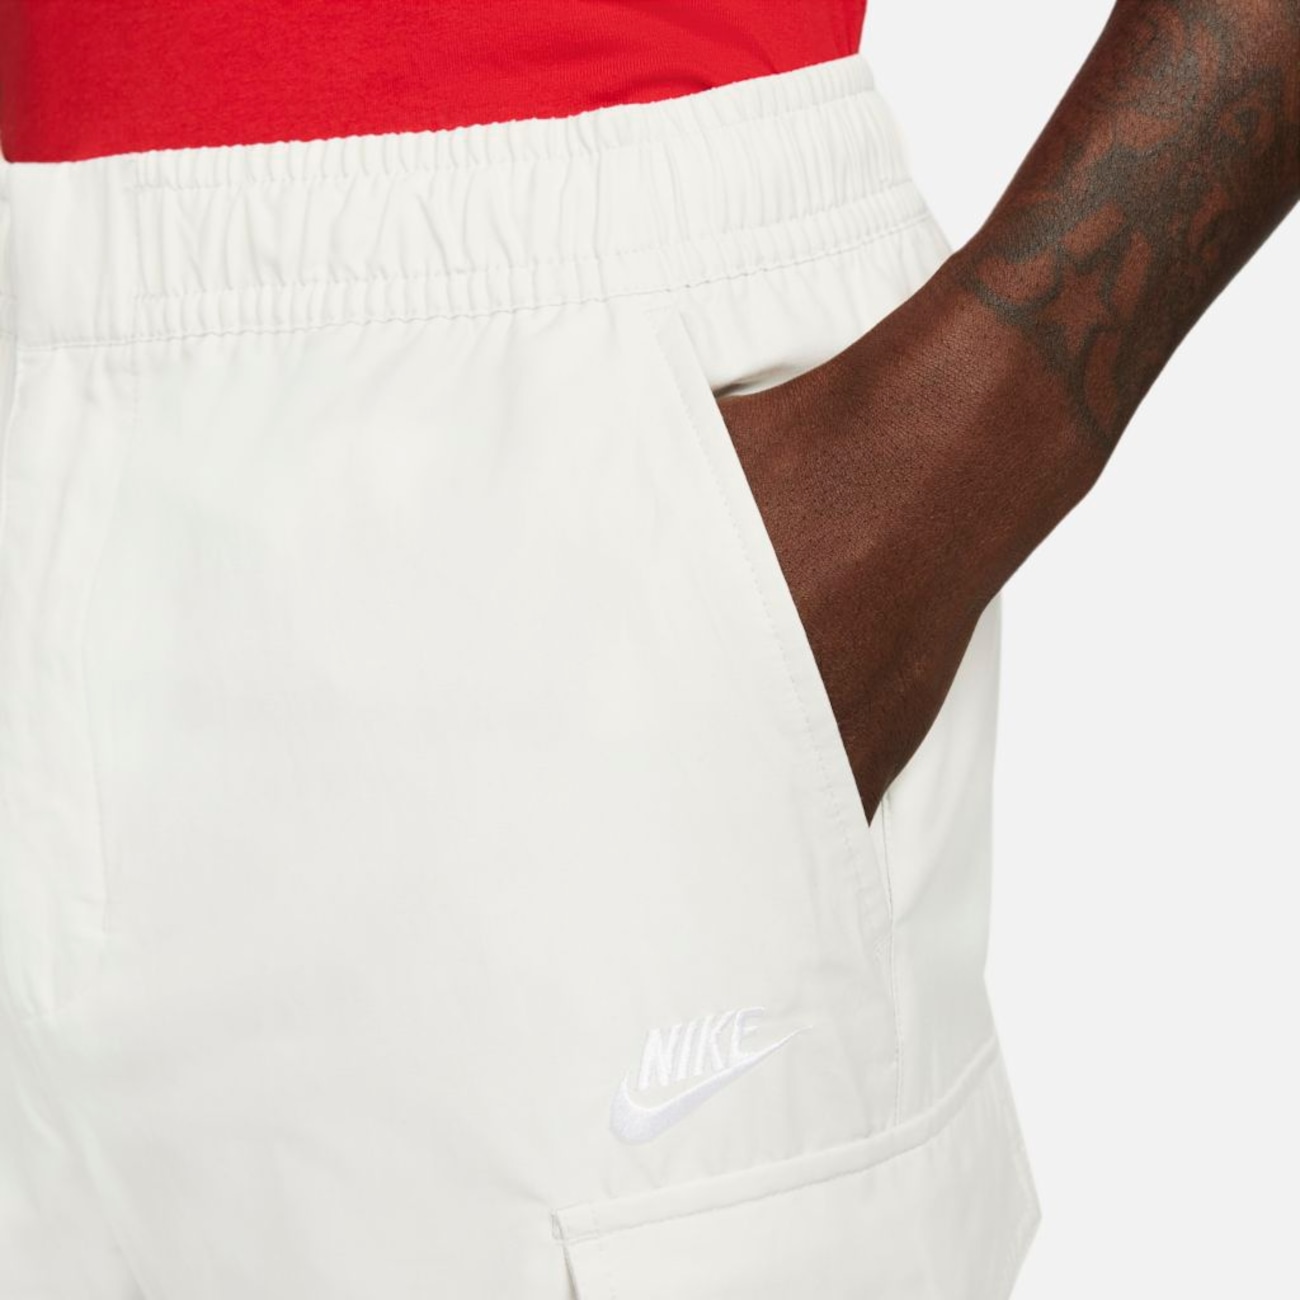 Calça Nike Sportswear Masculina - Foto 3